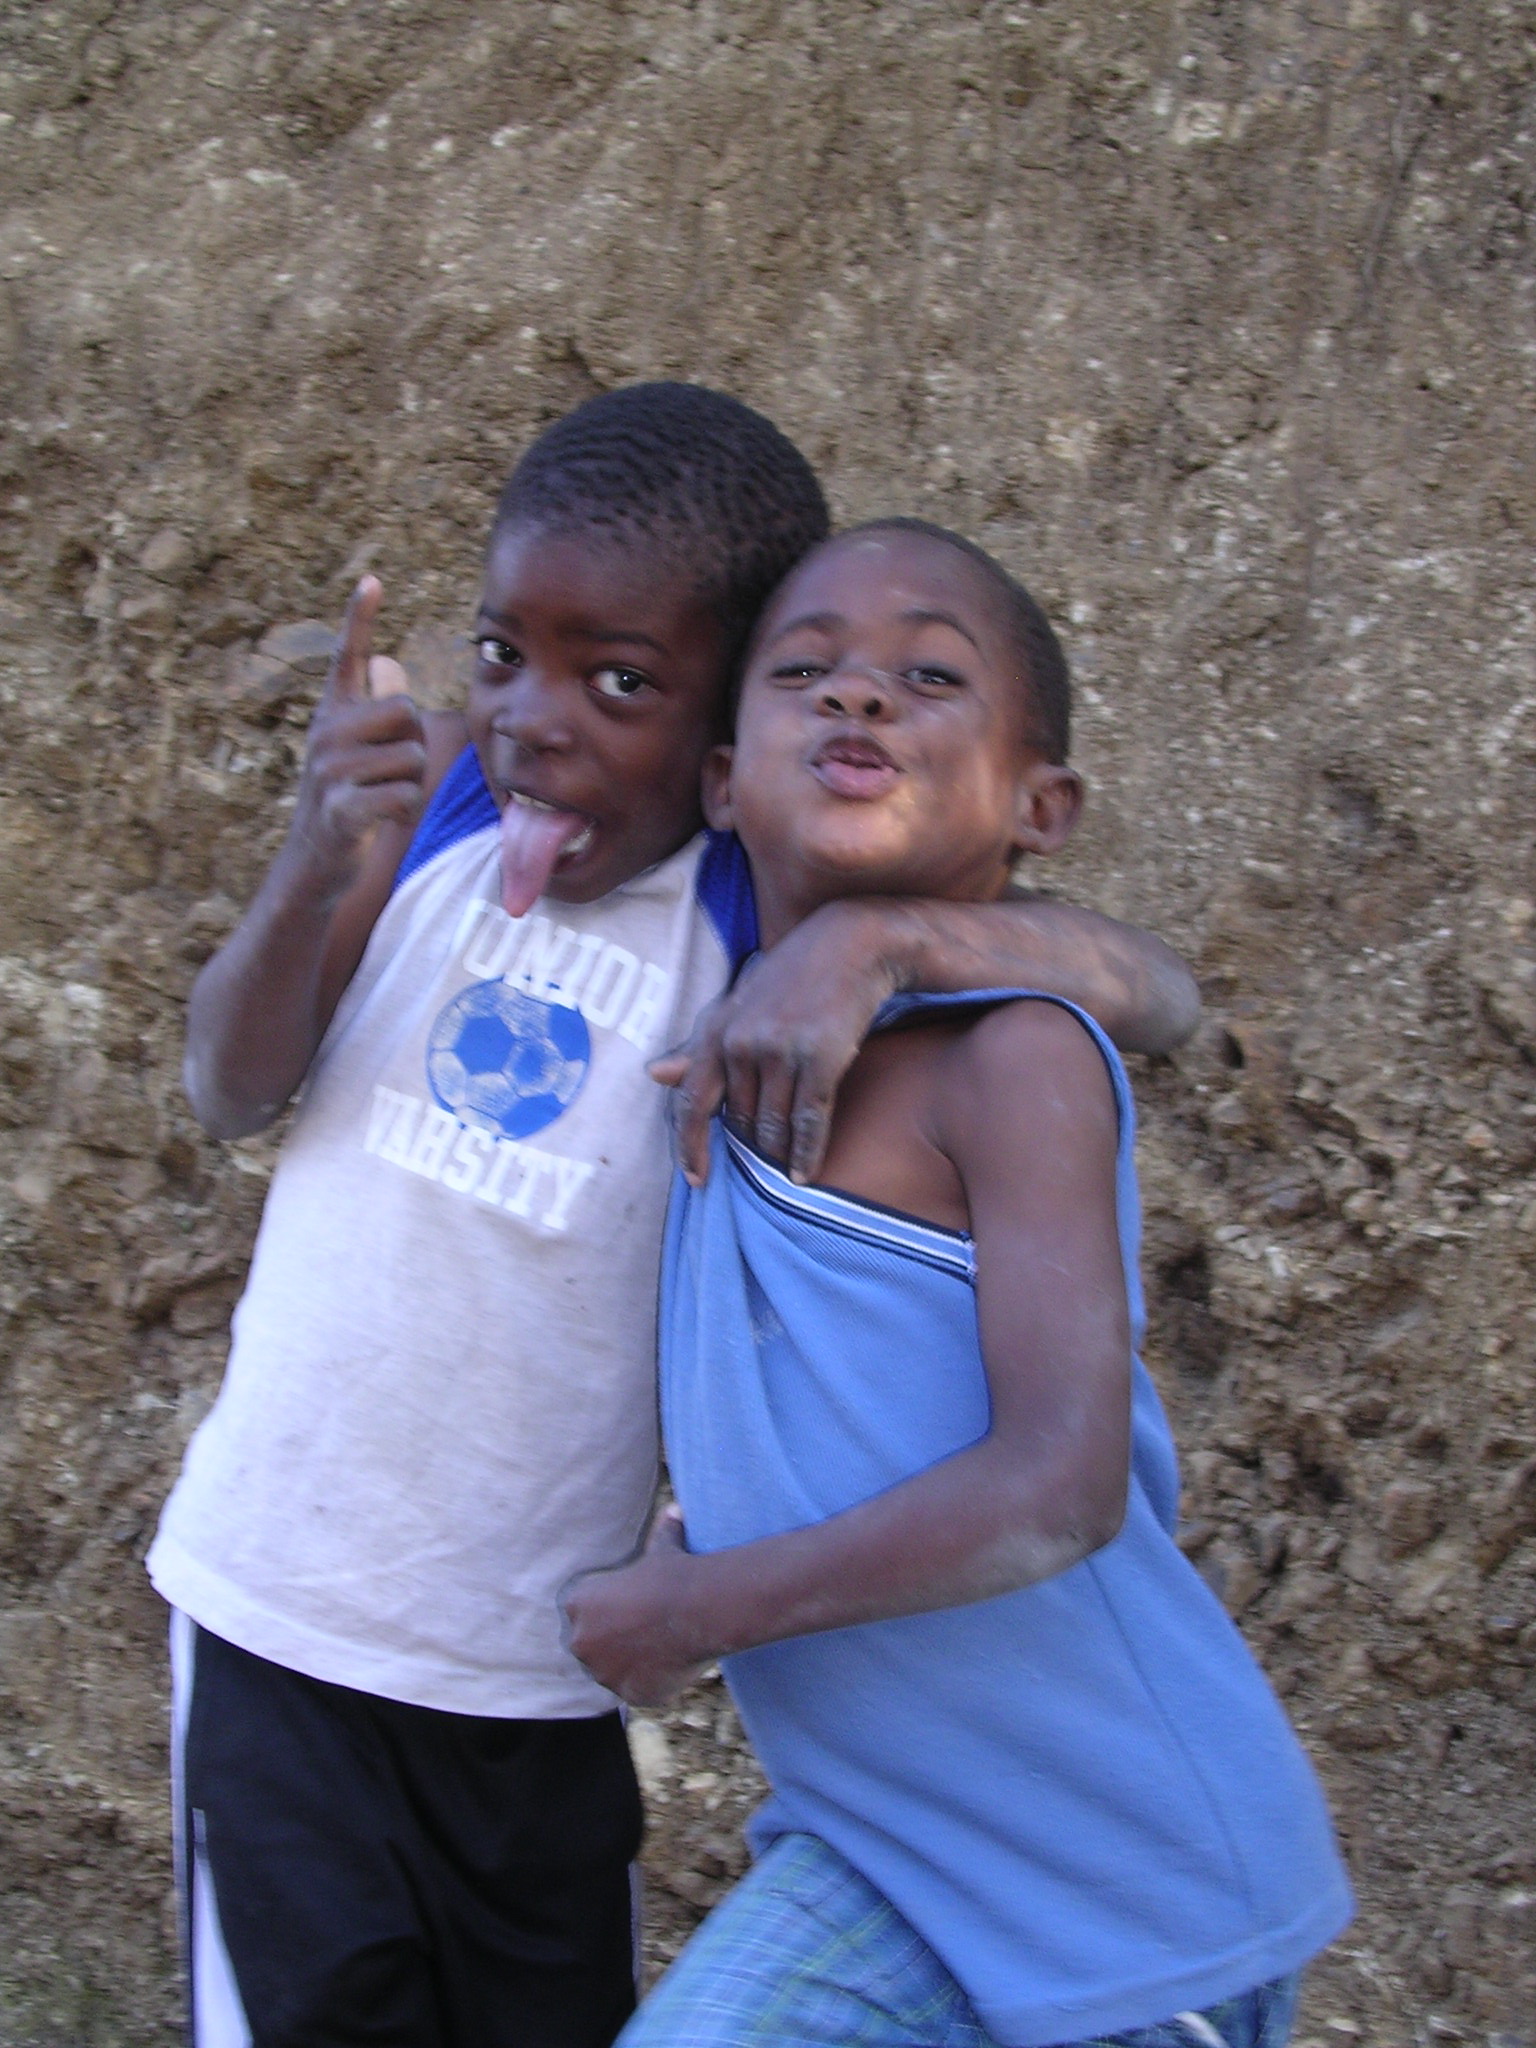 Haitian boys